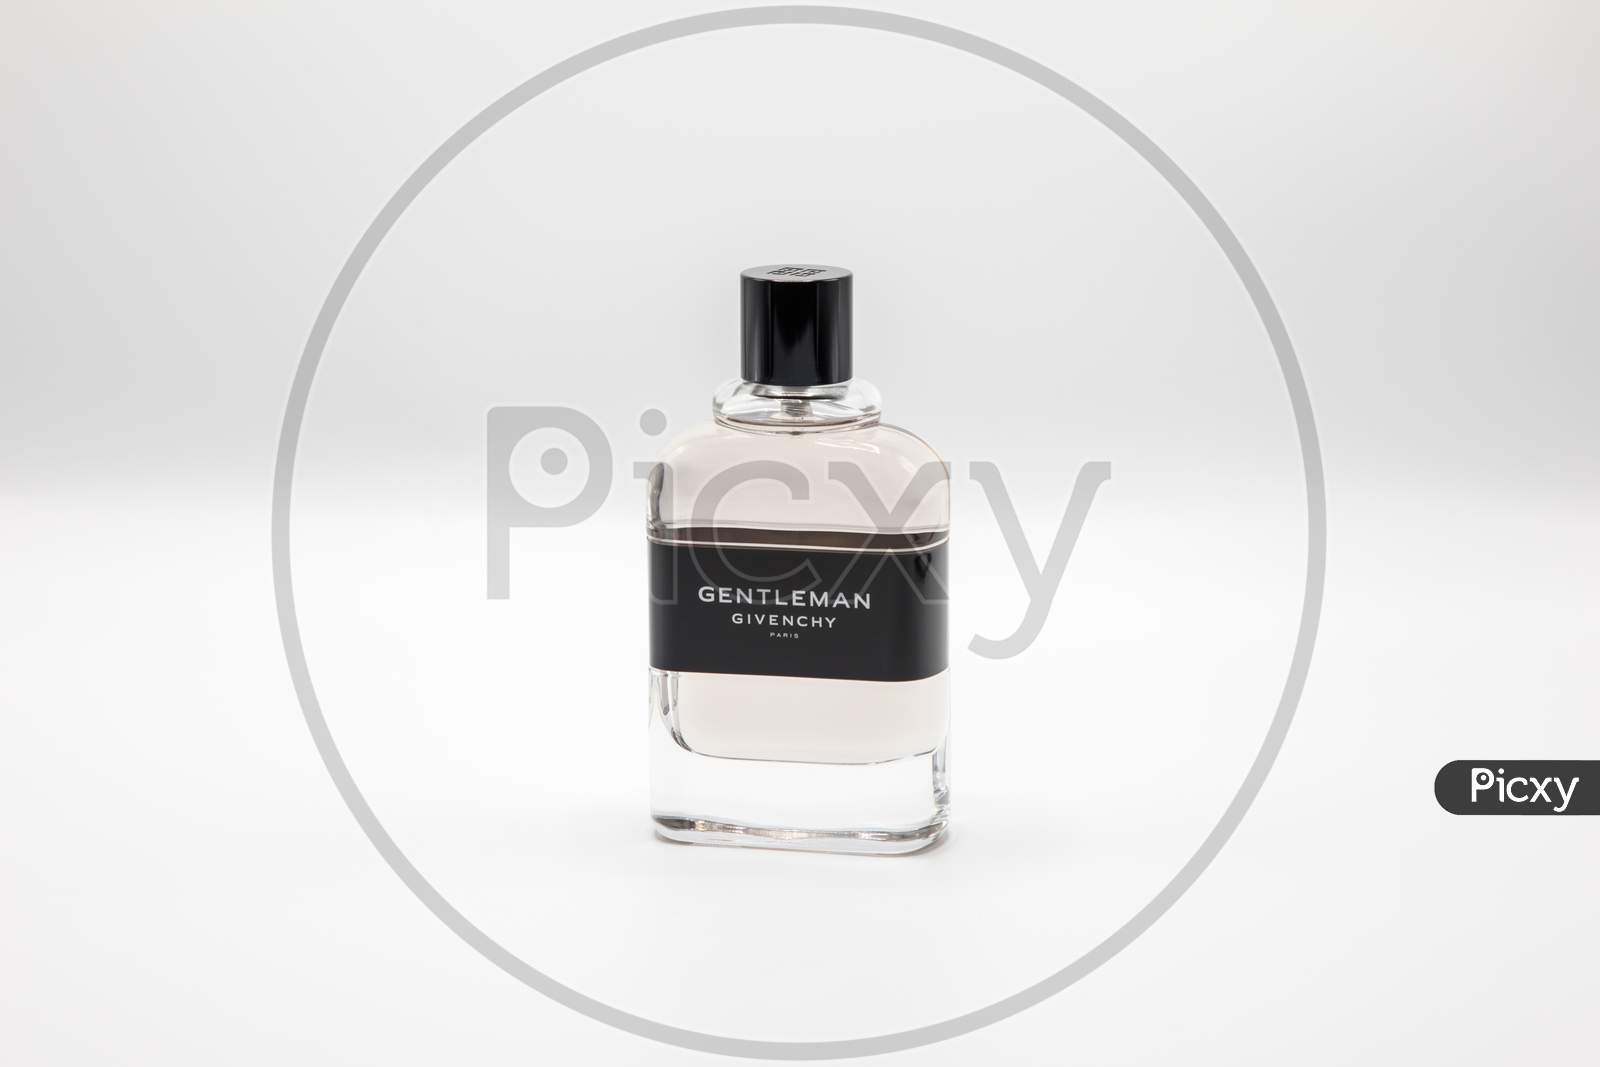 Perfume Bottle on White Background